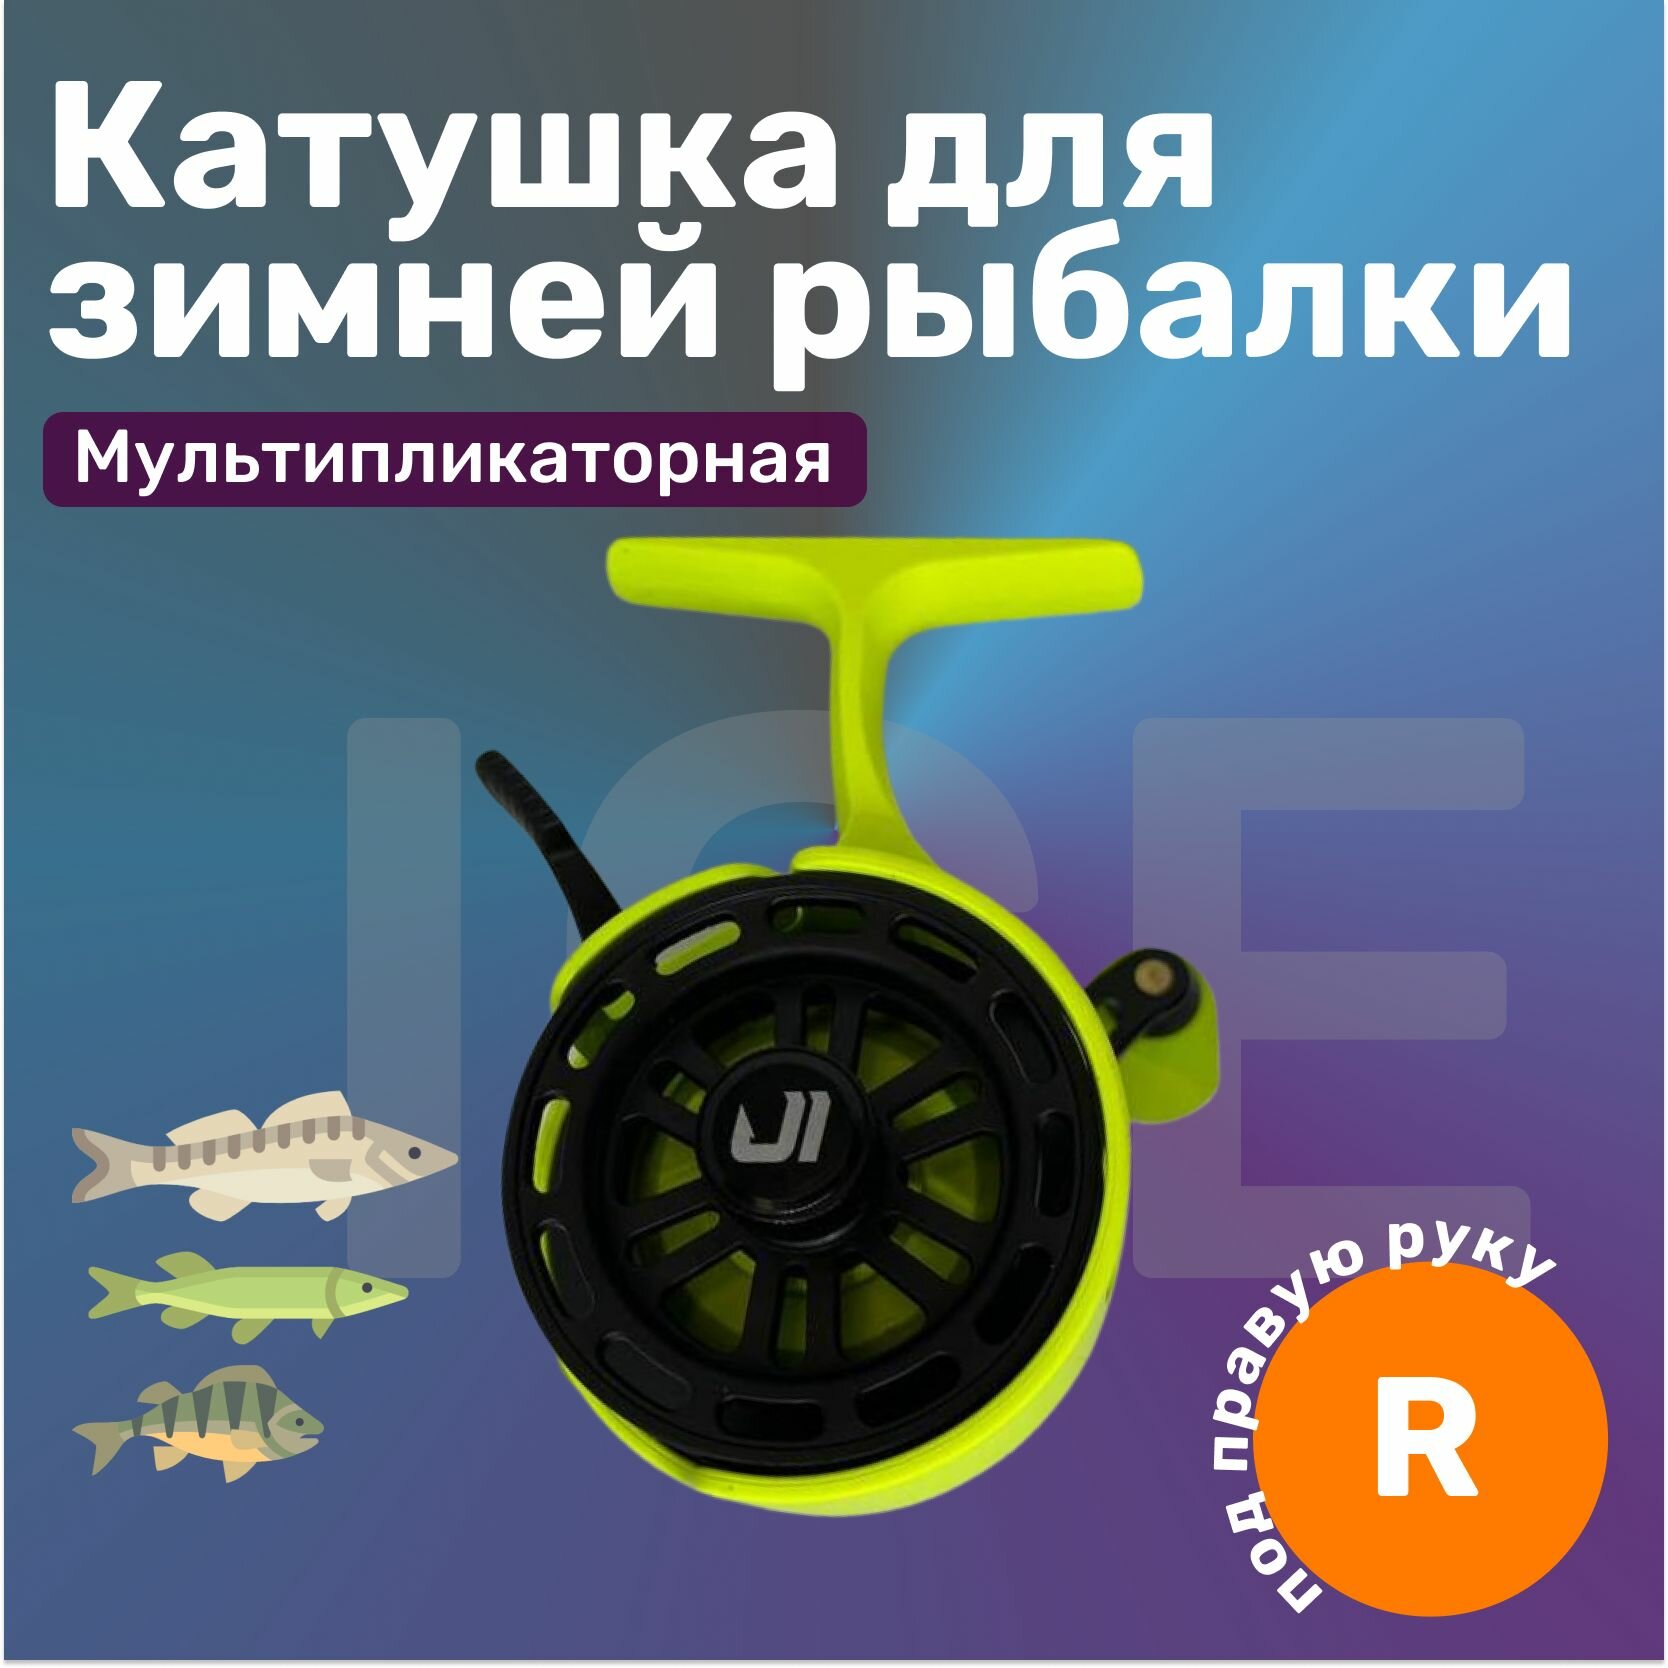 Катушка Jig It Team Dubna для зимней рыбалки мультипликаторная